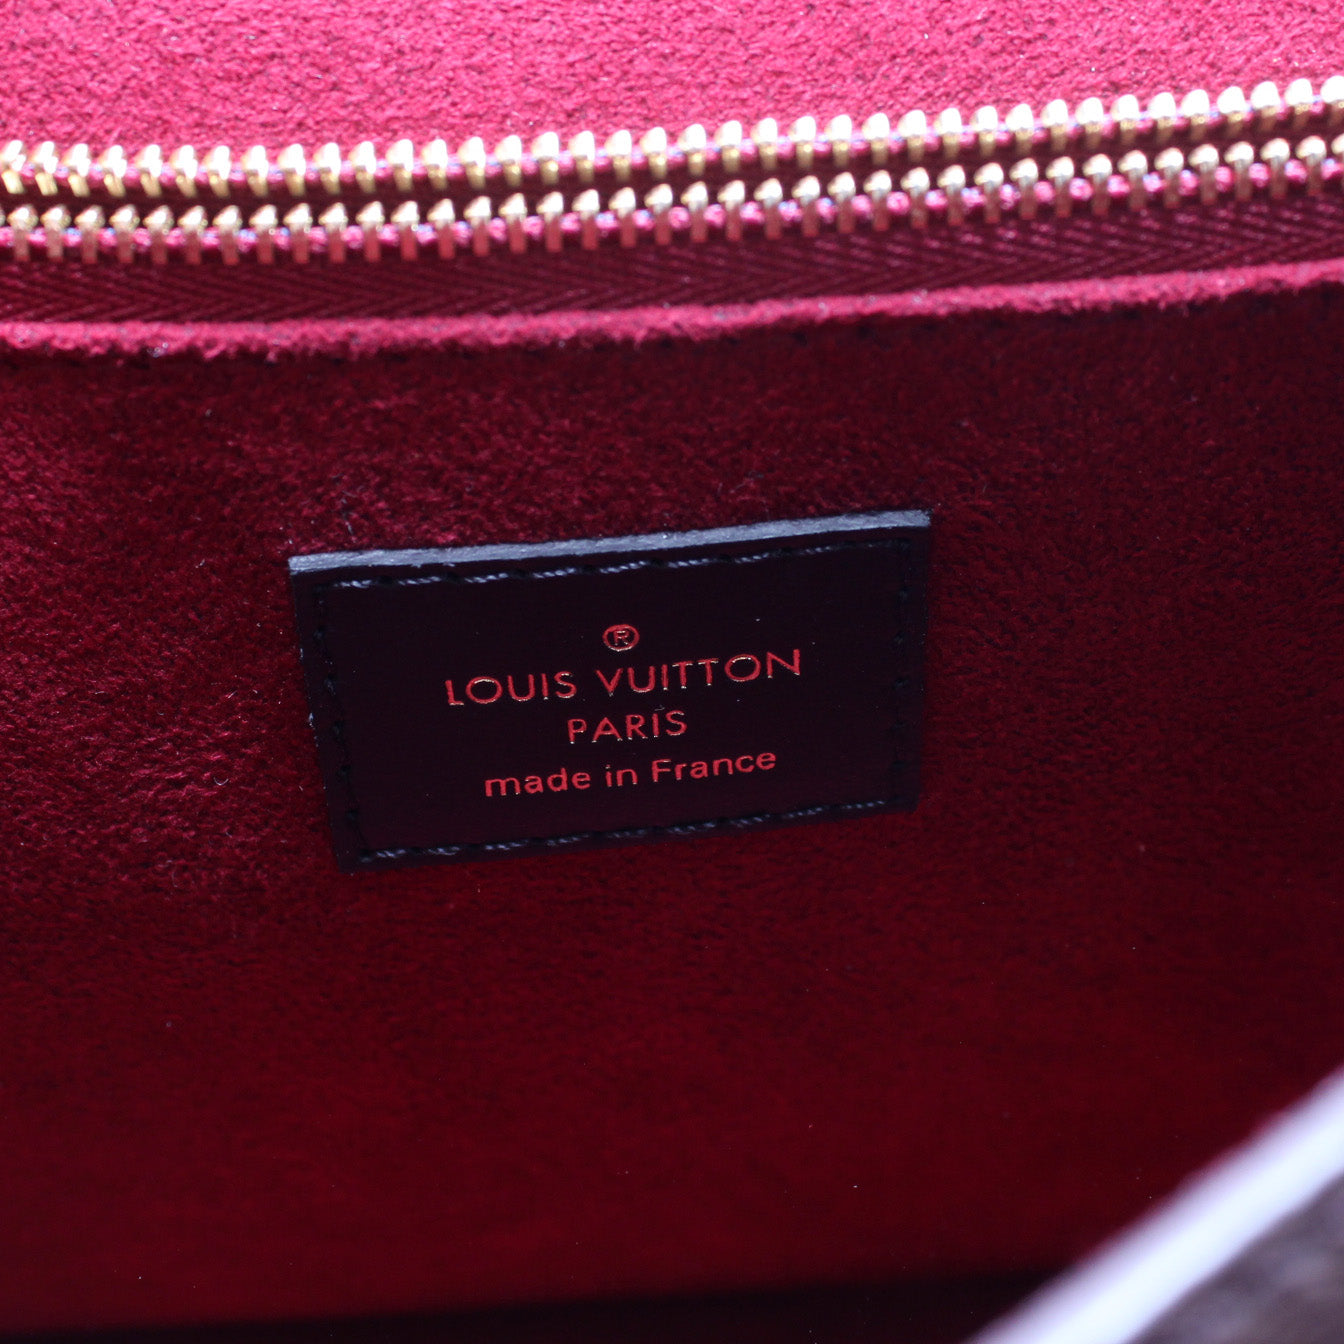 Express lace poncho, vintage Louis Vuitton Passy bag, lace poncho